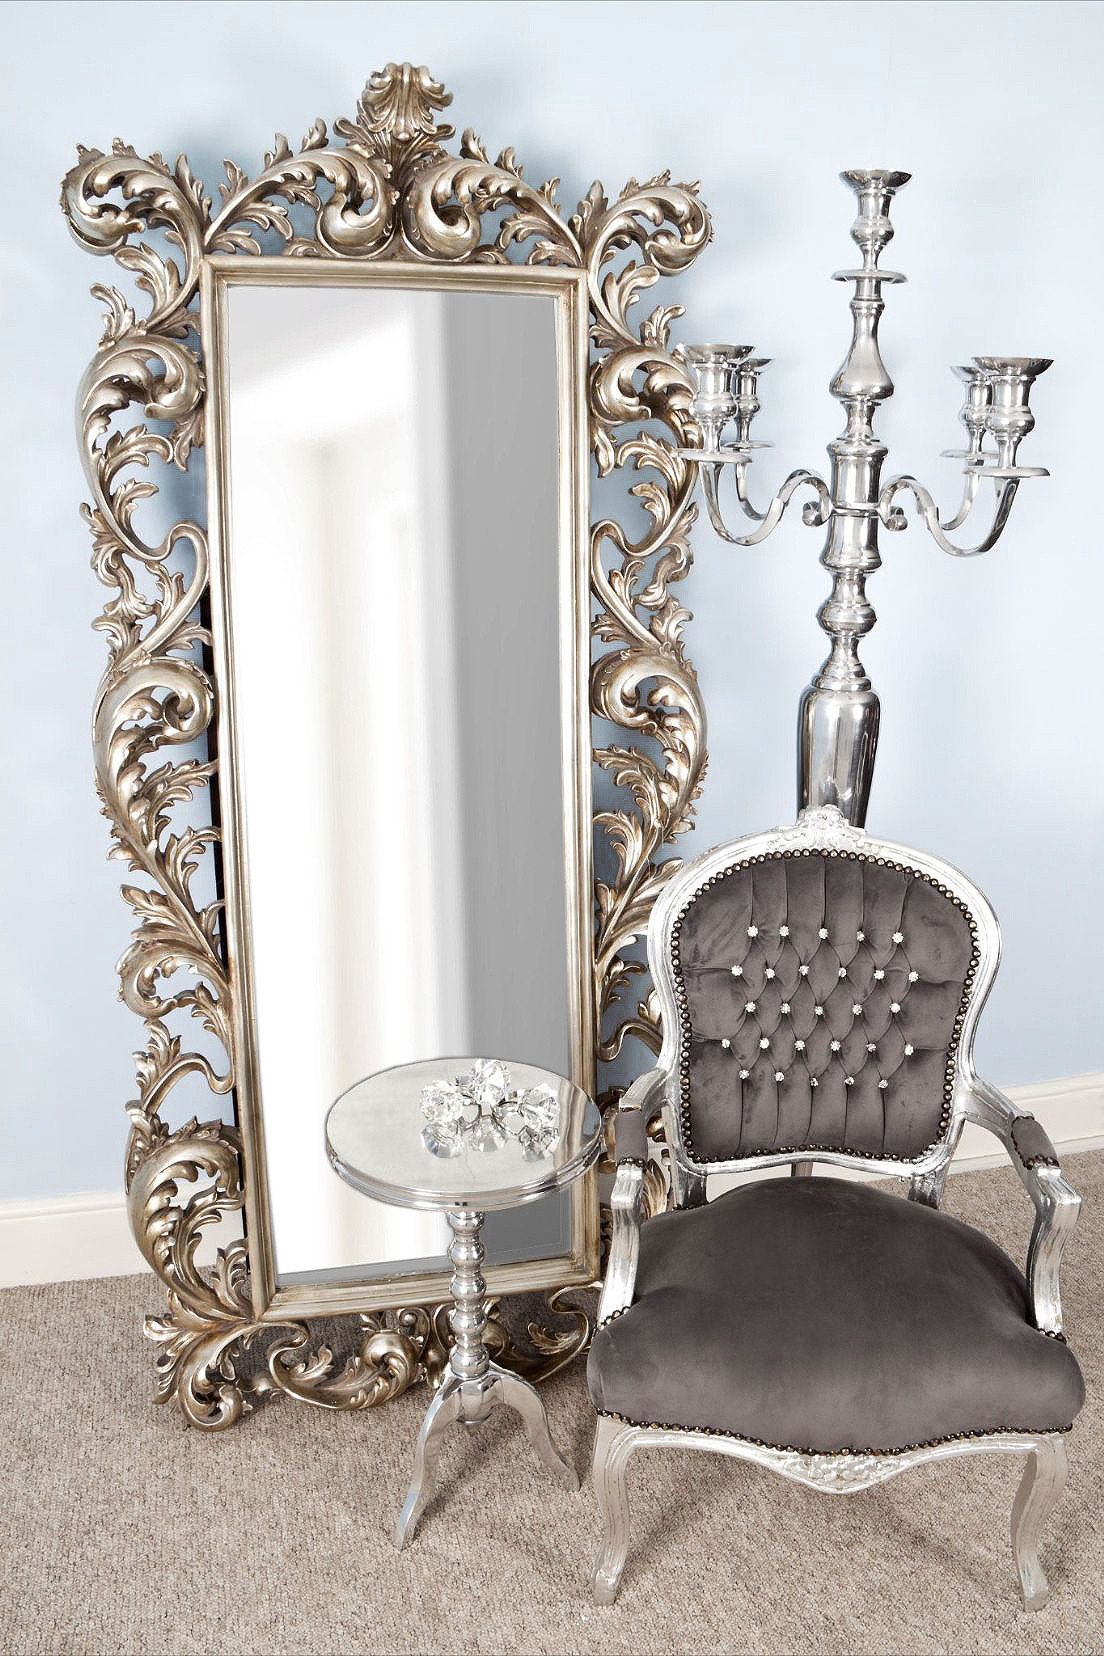 Шикарное напольное зеркало Мэривейл серебро.jpg